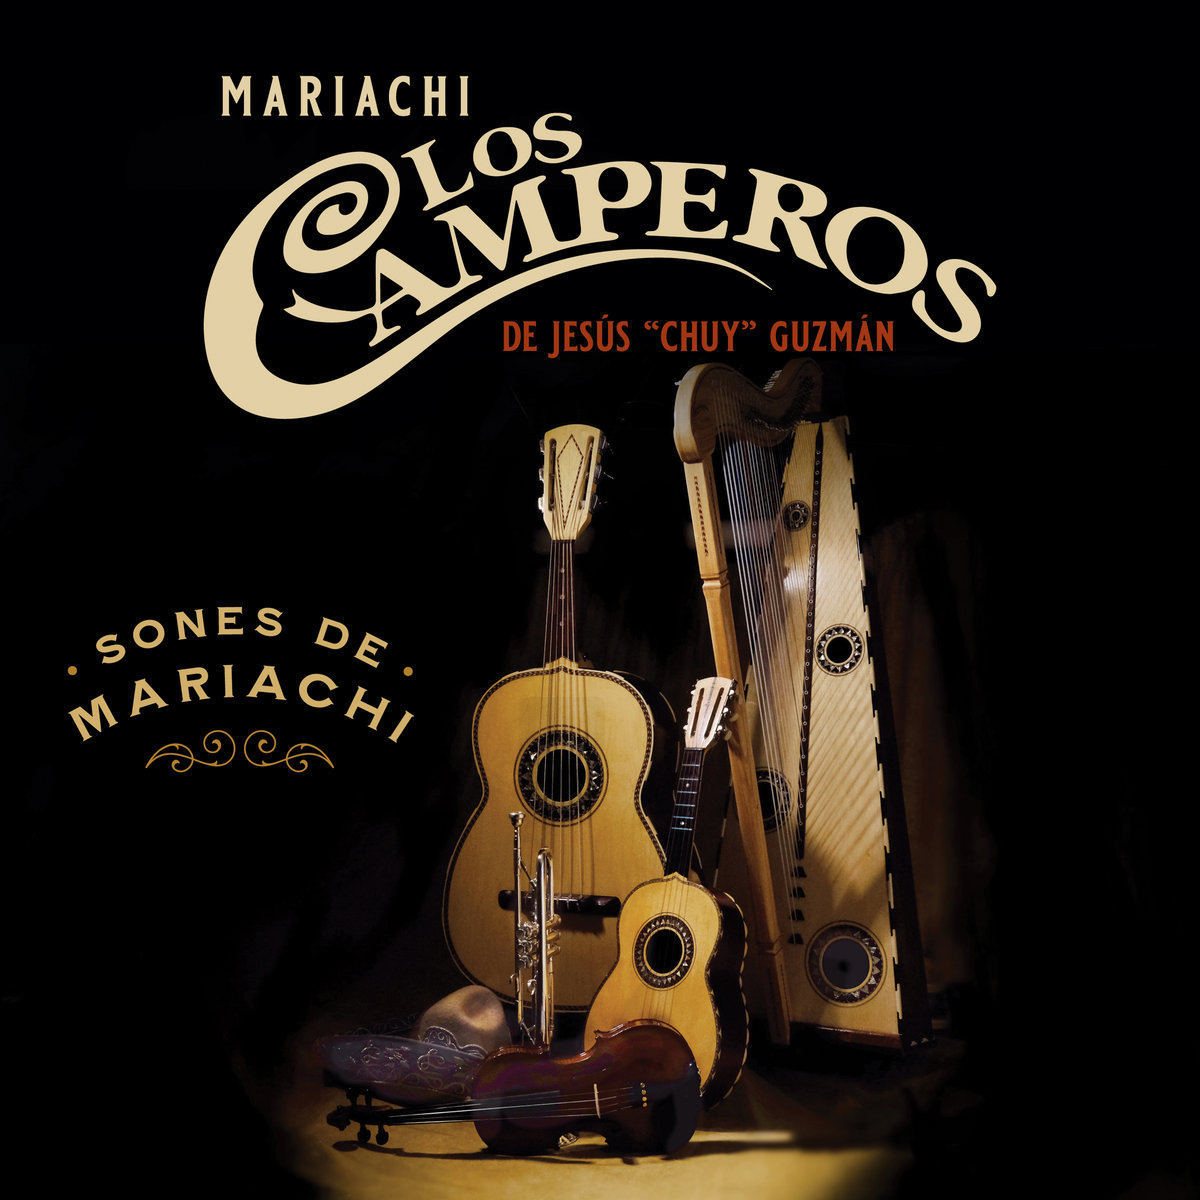 Sones de Mariachi Los Camperos